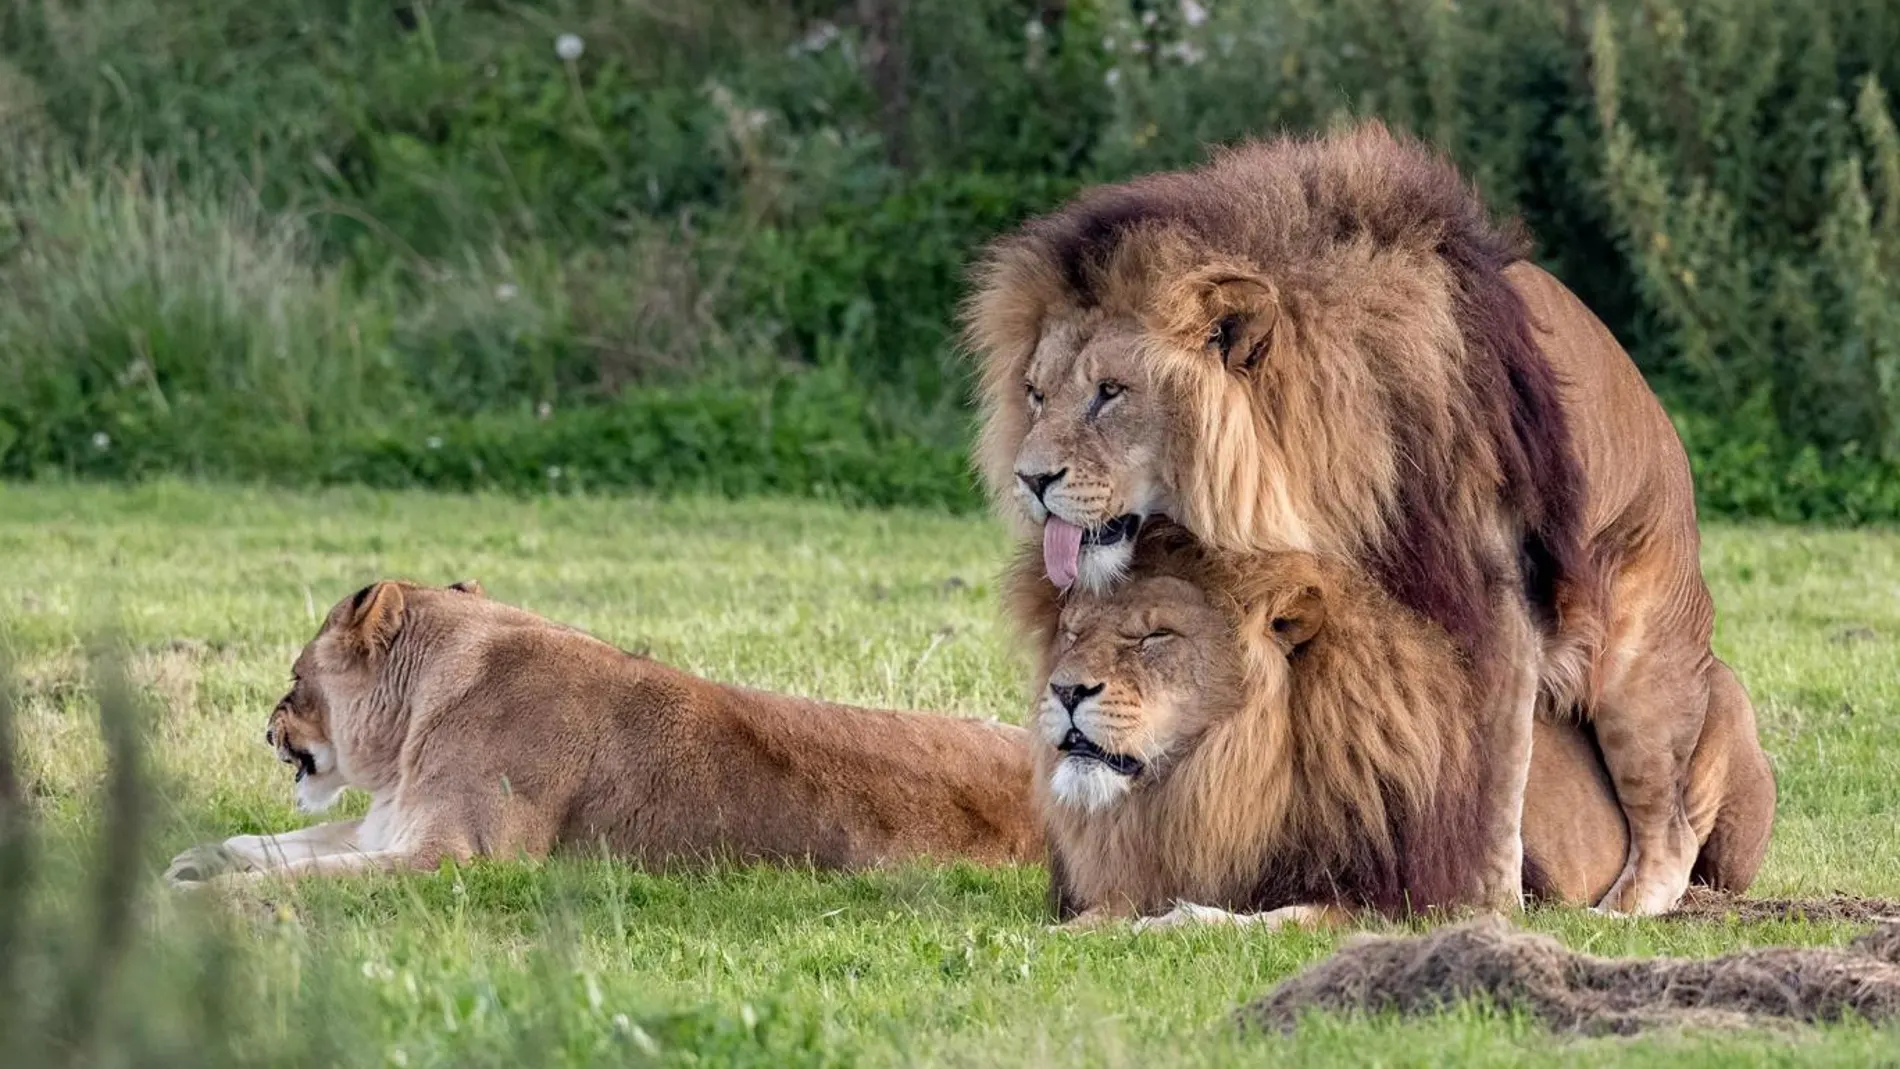  Fotografían a dos leones machos practicando sexo